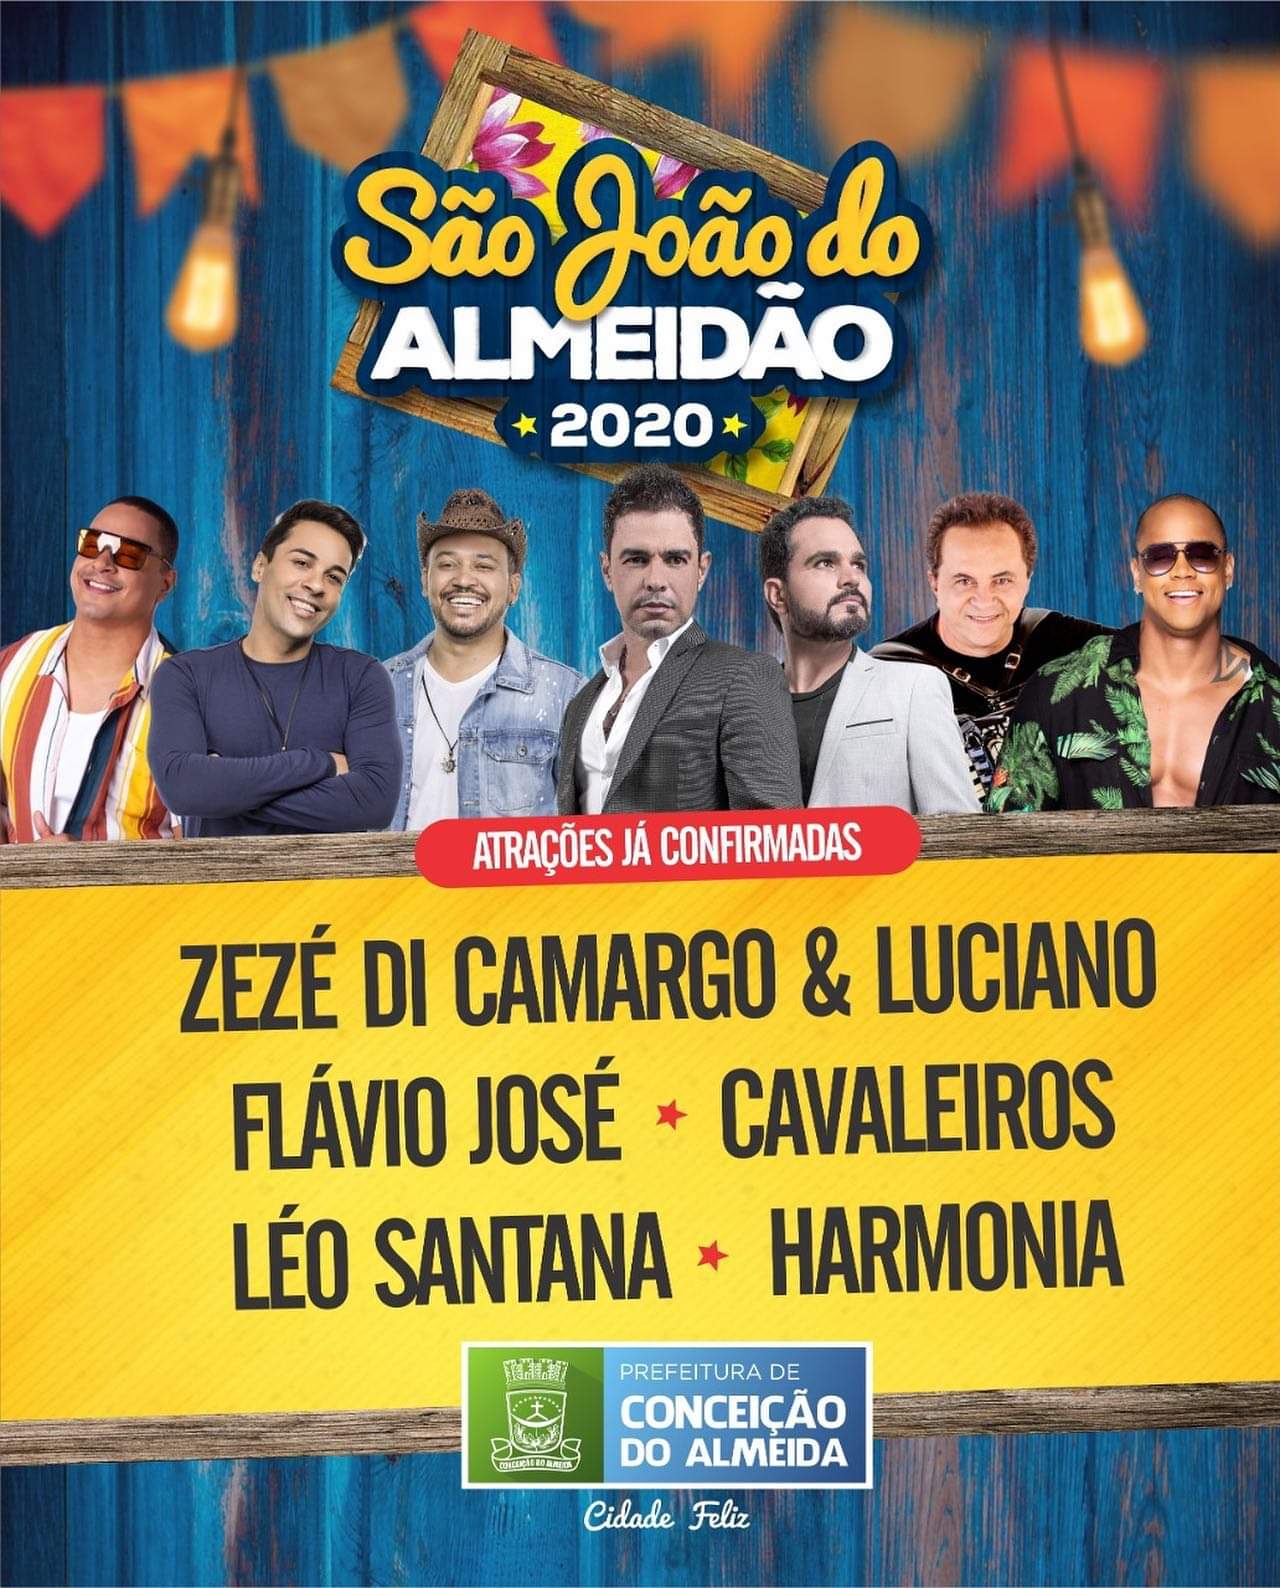 Saiu na frente! Prefeitura de Conceição do Almeida divulga cinco atrações do São João 2020